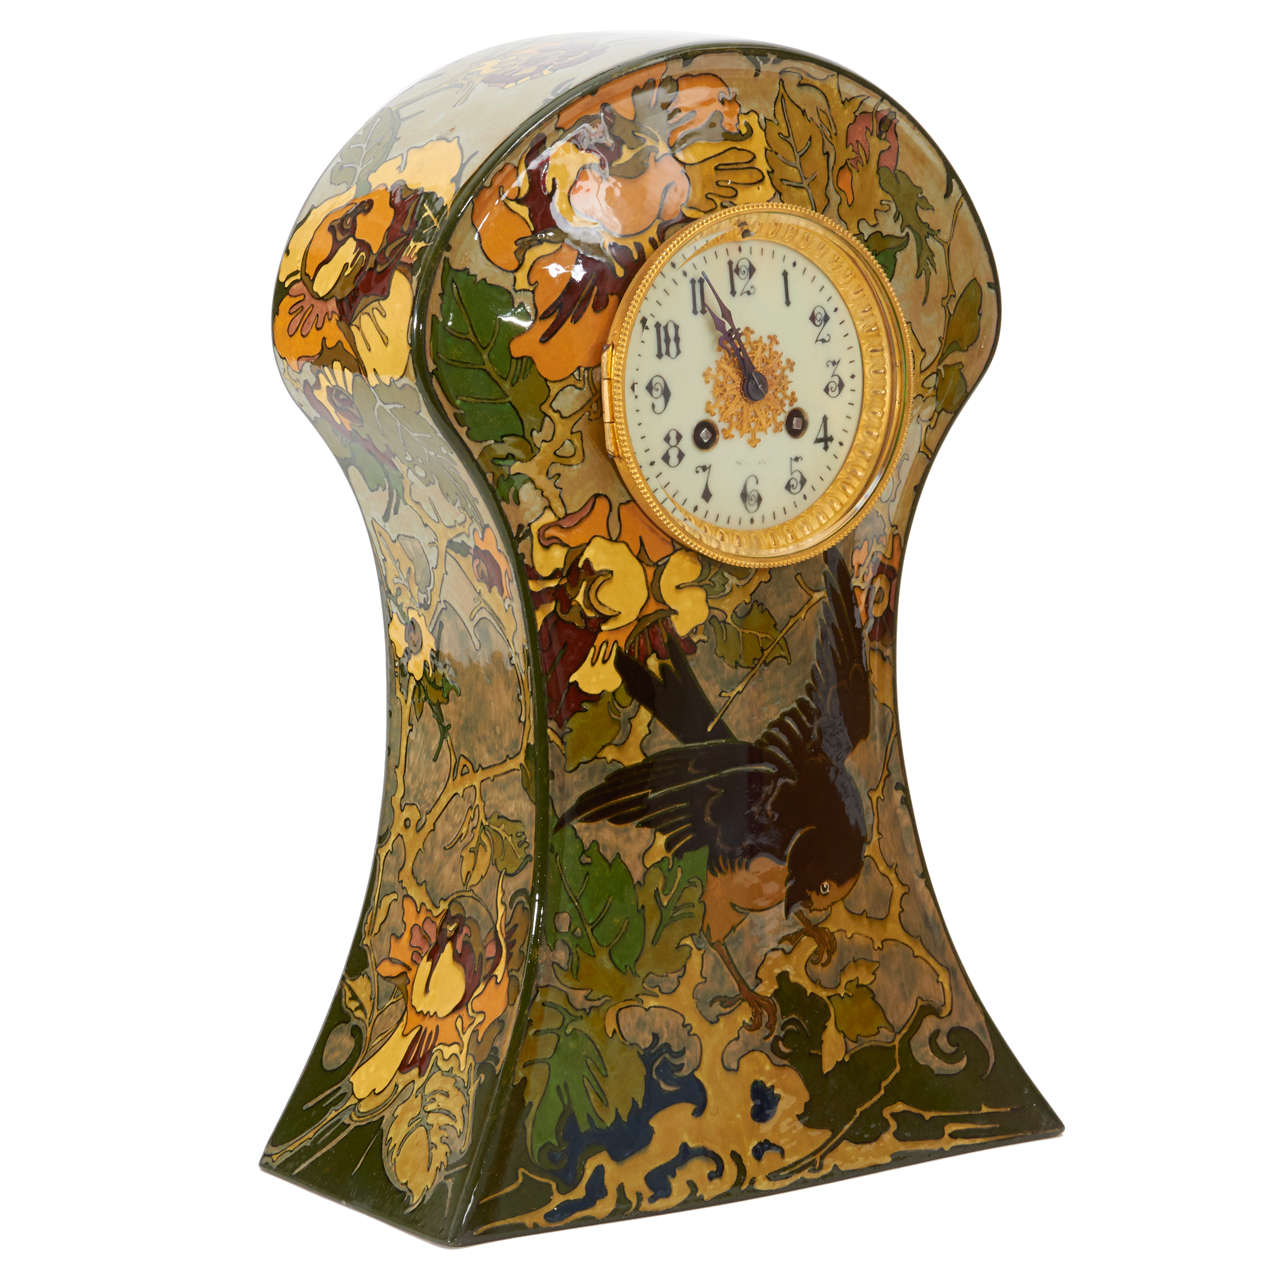 Rozenburg Pottery Holland, W.P. Hartgring Art Nouveau Mantle Clock, 1904 For Sale